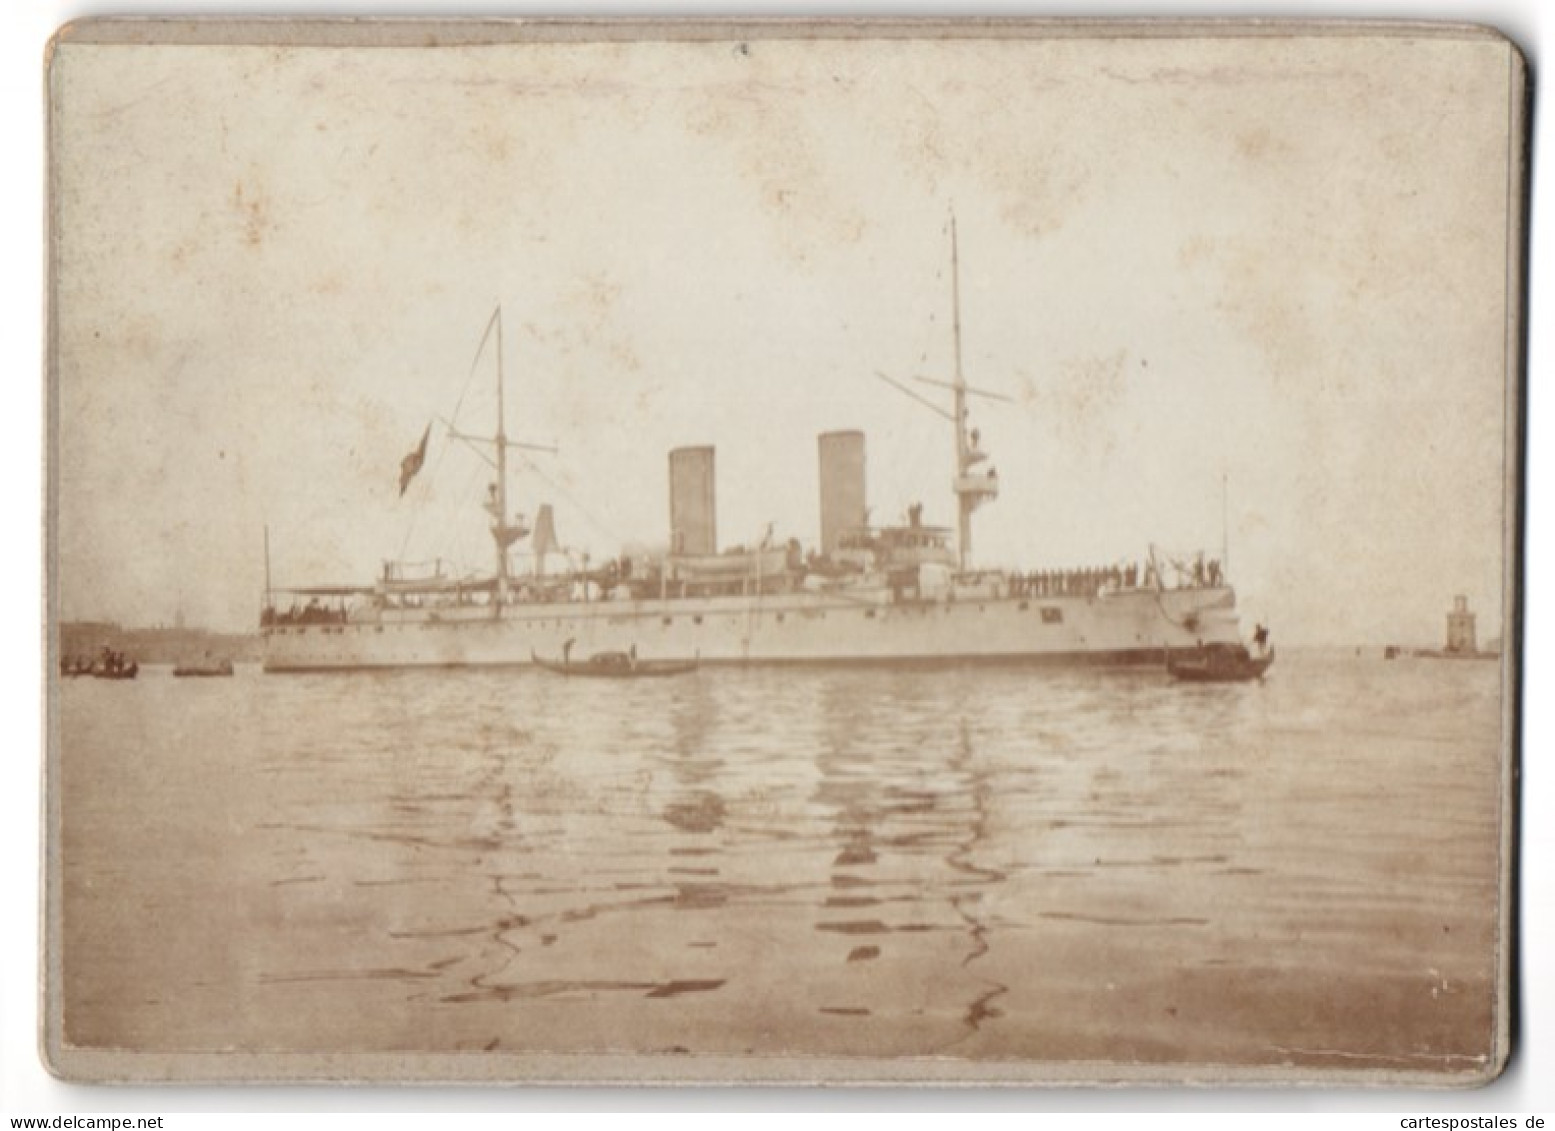 28 Foto unbekannter Fotograf, Venedig, Baron Hilmar von dem Bussche in Venedig, Gondel, Kriegsschiff, 1900 